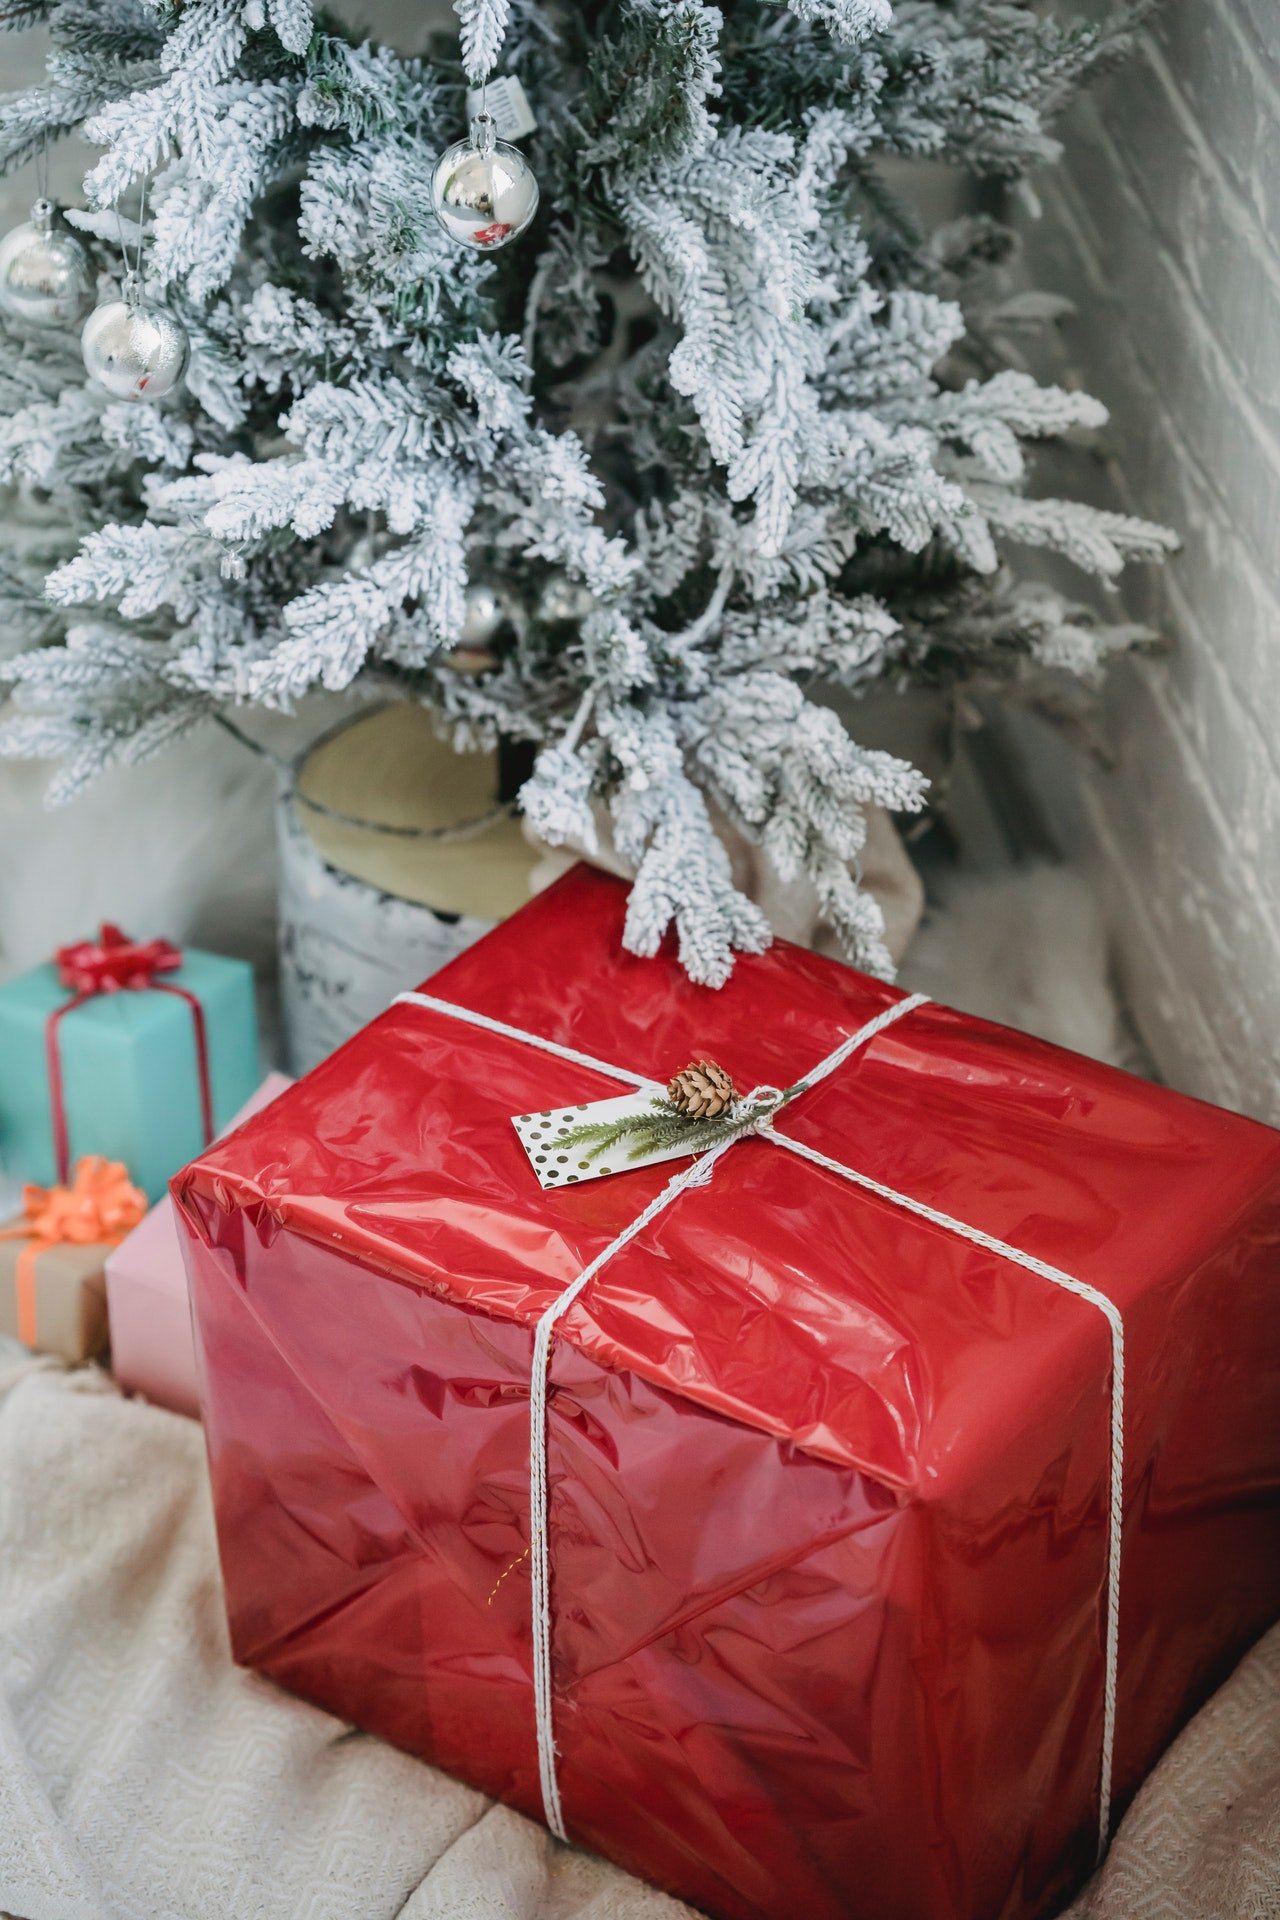 Un regalo envuelto en papel rojo, debajo del árbol de Navidad. | Foto: Pexels